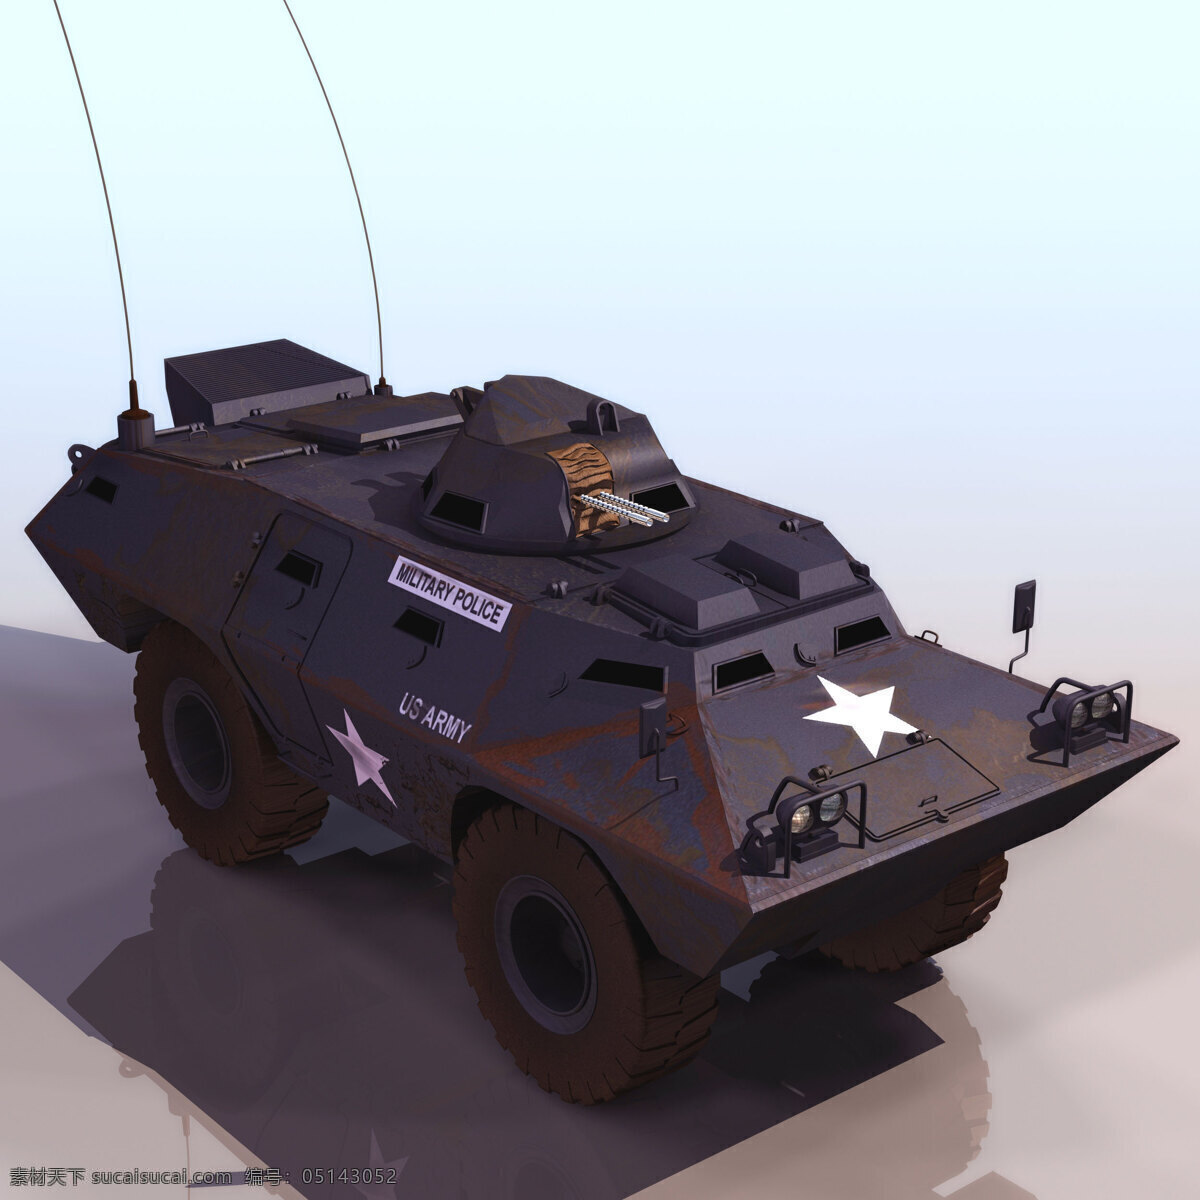 黑色 四轮驱动 装甲车 模型 3d模型 max 越野车 3d模型素材 其他3d模型